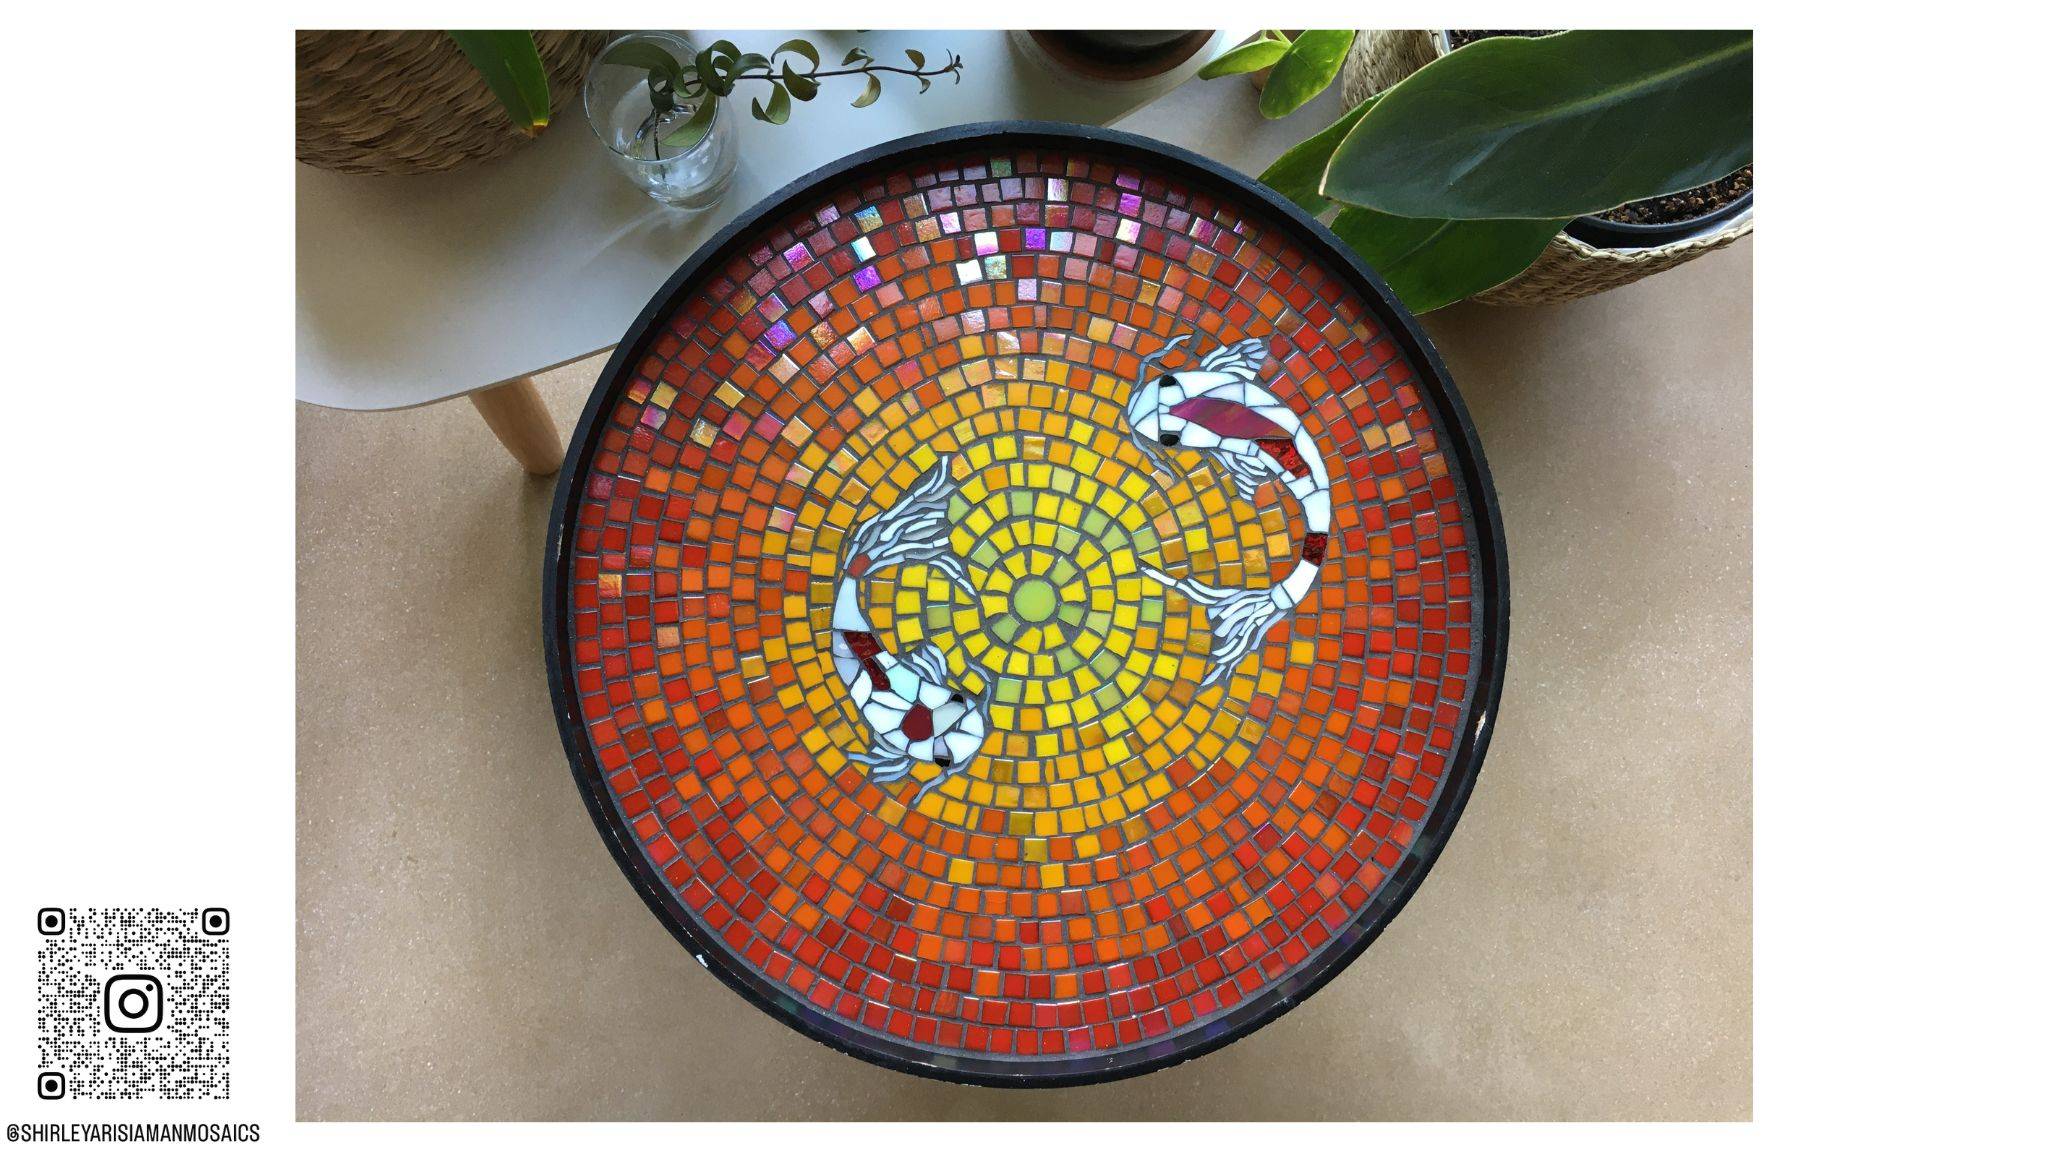 Rond tafelblad in mozaiek met 2 koi vissen op een rode achtergrond die naar geel verloopt. Gemaakt in glasmozaiek en iriserende glasmozaiek. De vissen zijn sierlijk gemaakt met Glasscherven.